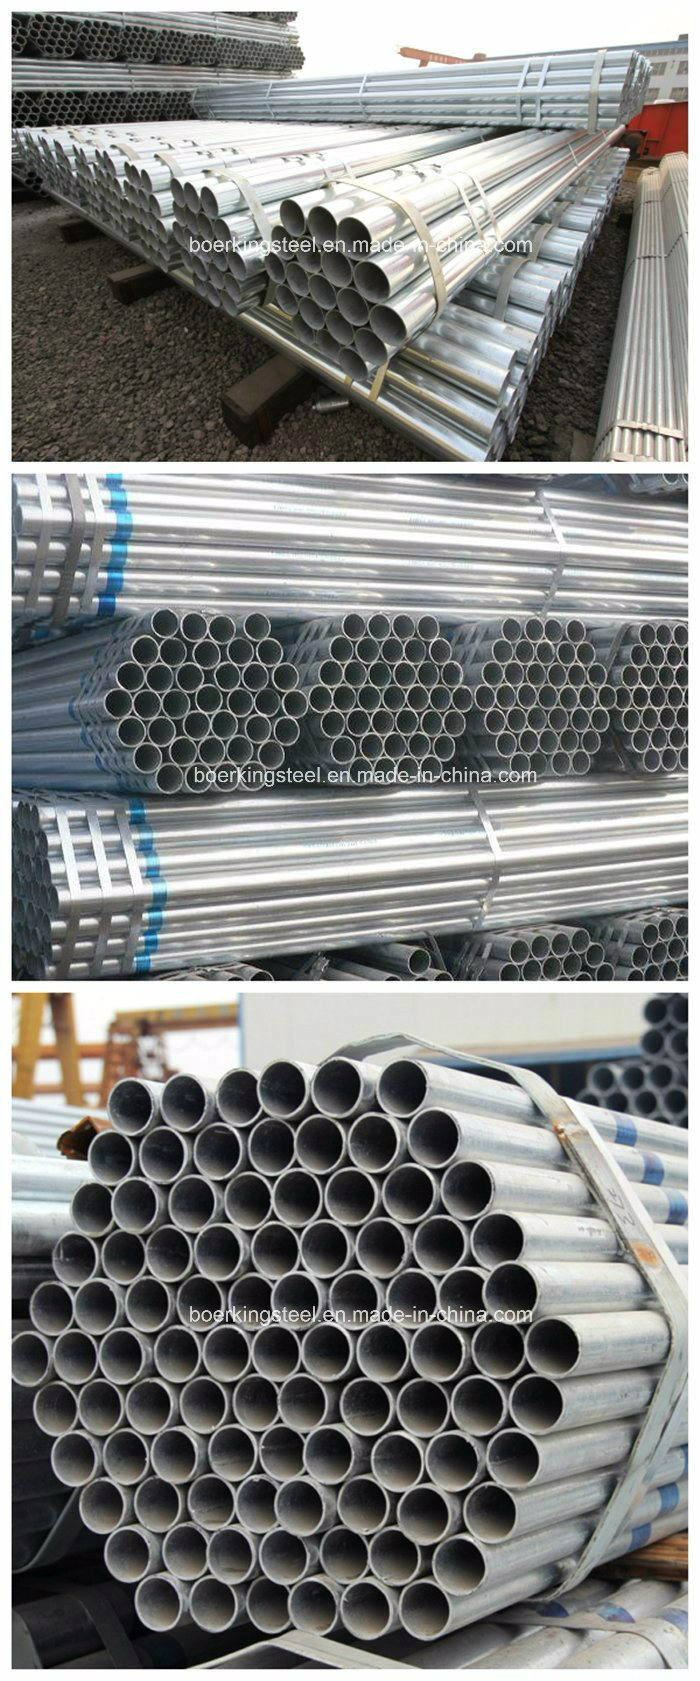 Q235, Q345 Hot DIP Galvanized Round Carbon Steel Tube